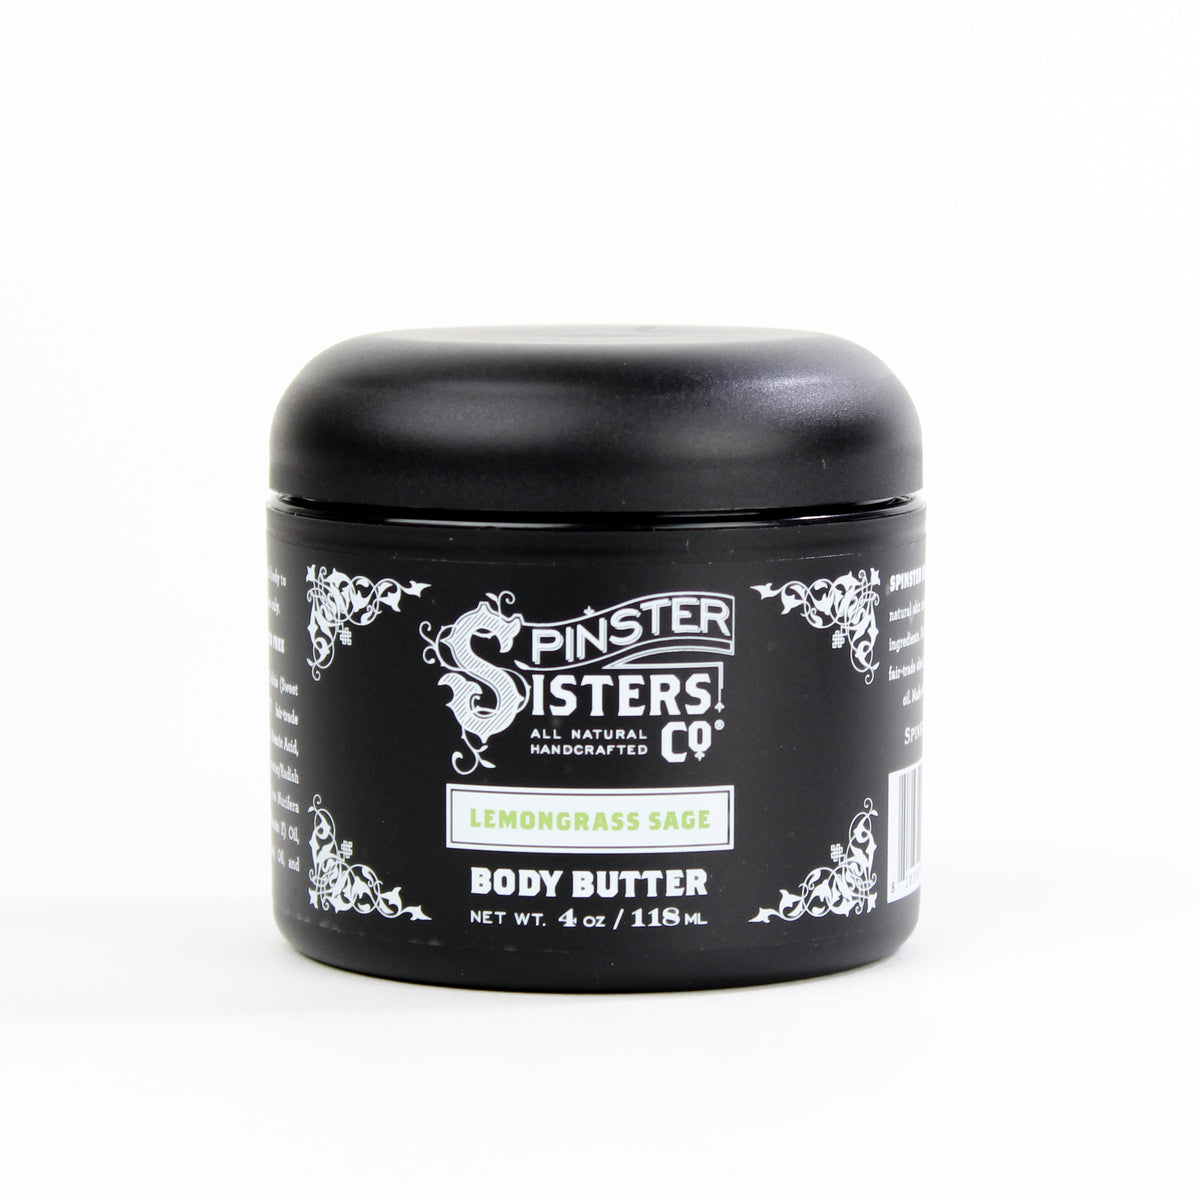 Spinster Sisters Body Butter 4oz Jar - Lemongrass Sage